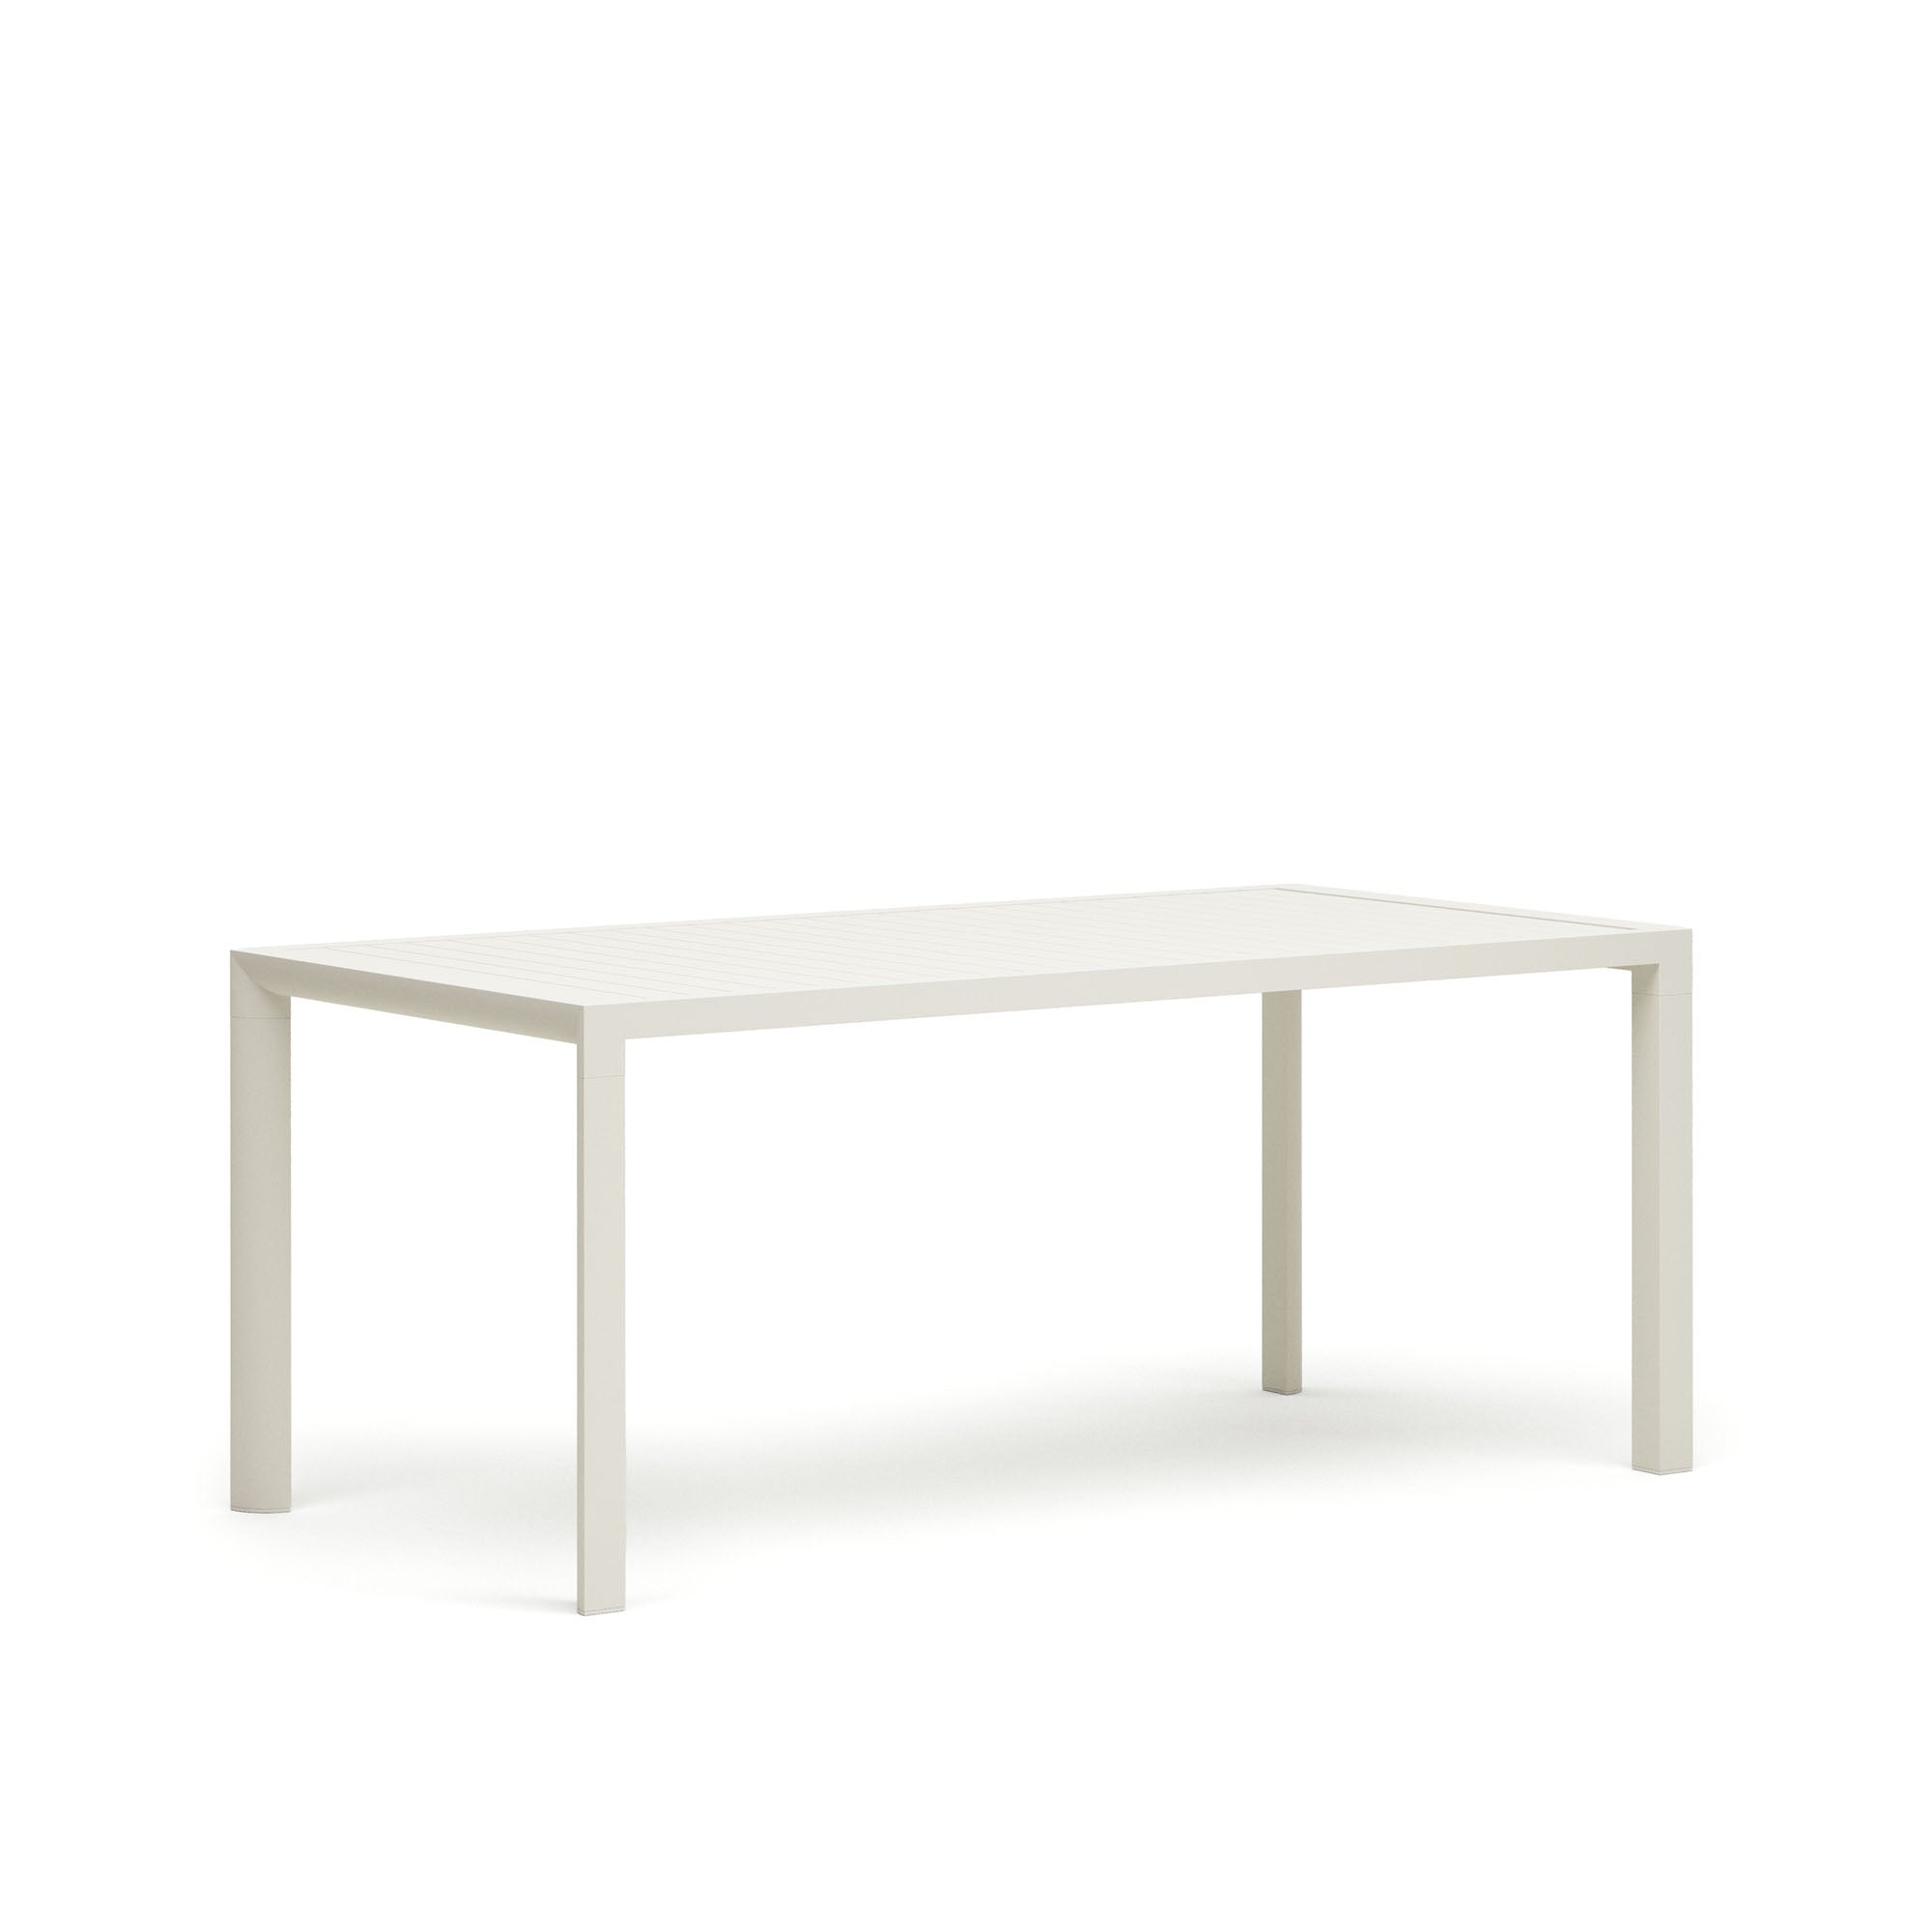 Culip alumínium kültéri asztal, fehér kivitelben, 180 x 90 cm